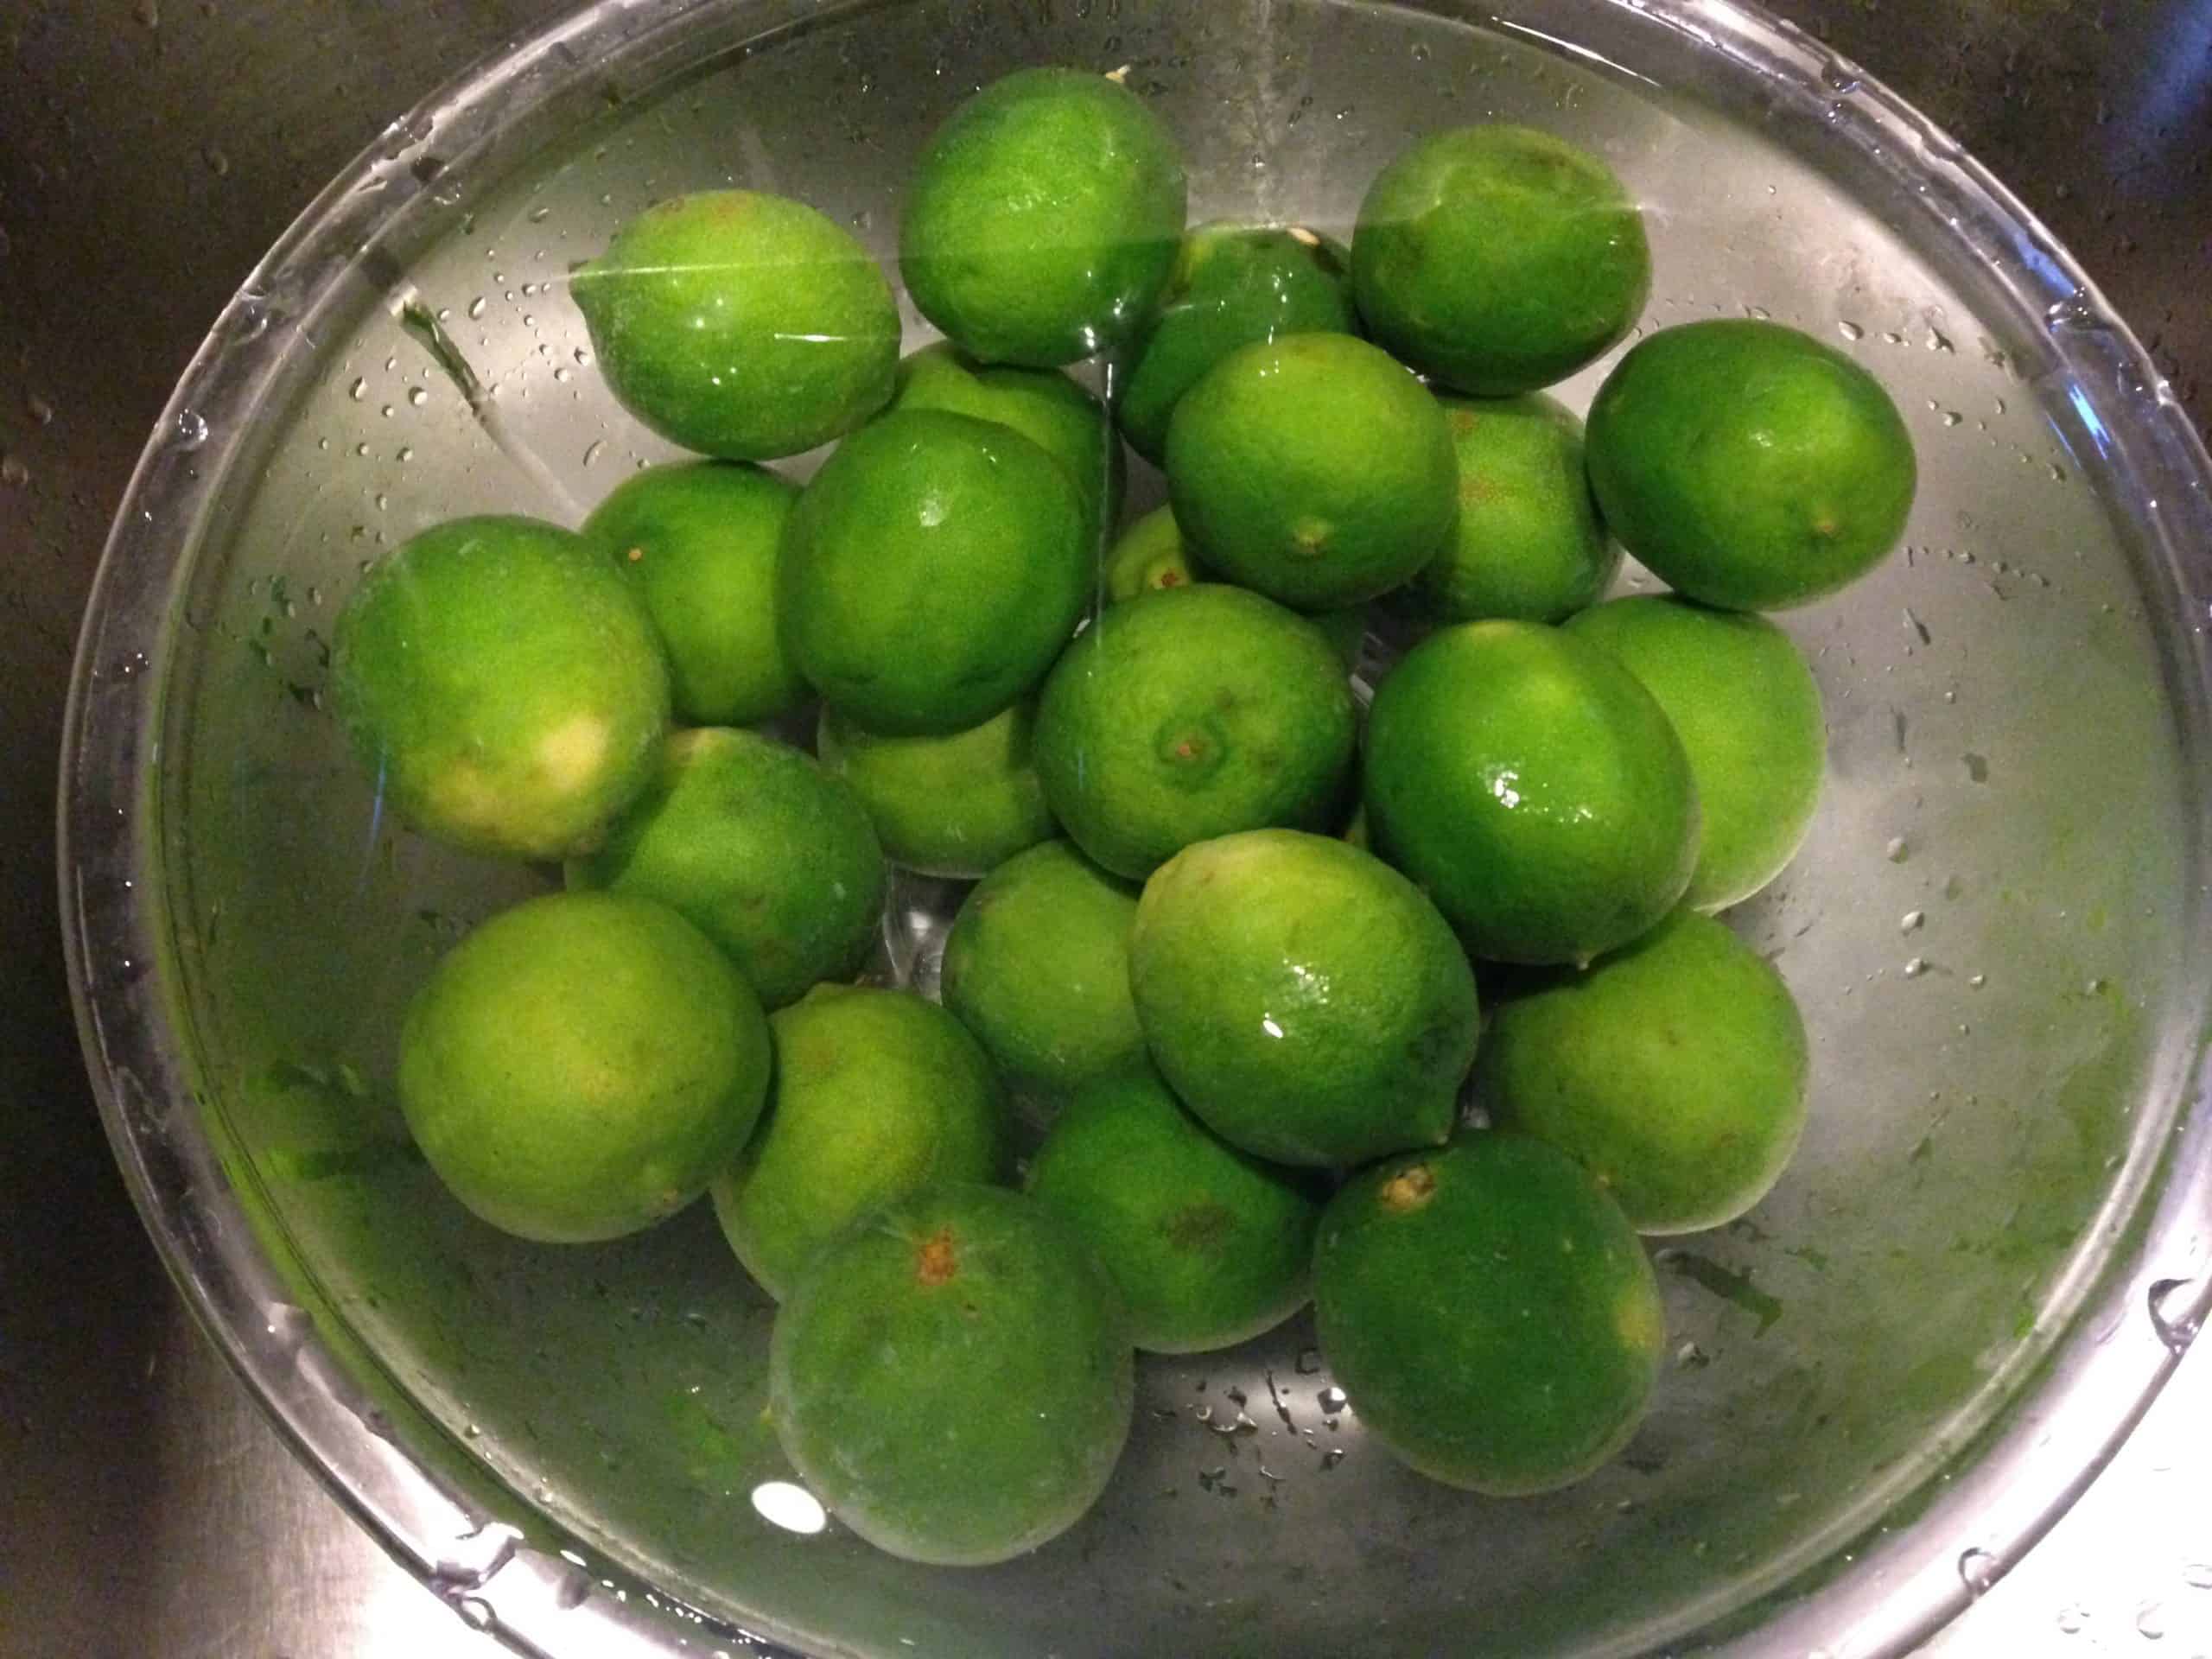 Limes for Salt Preserving